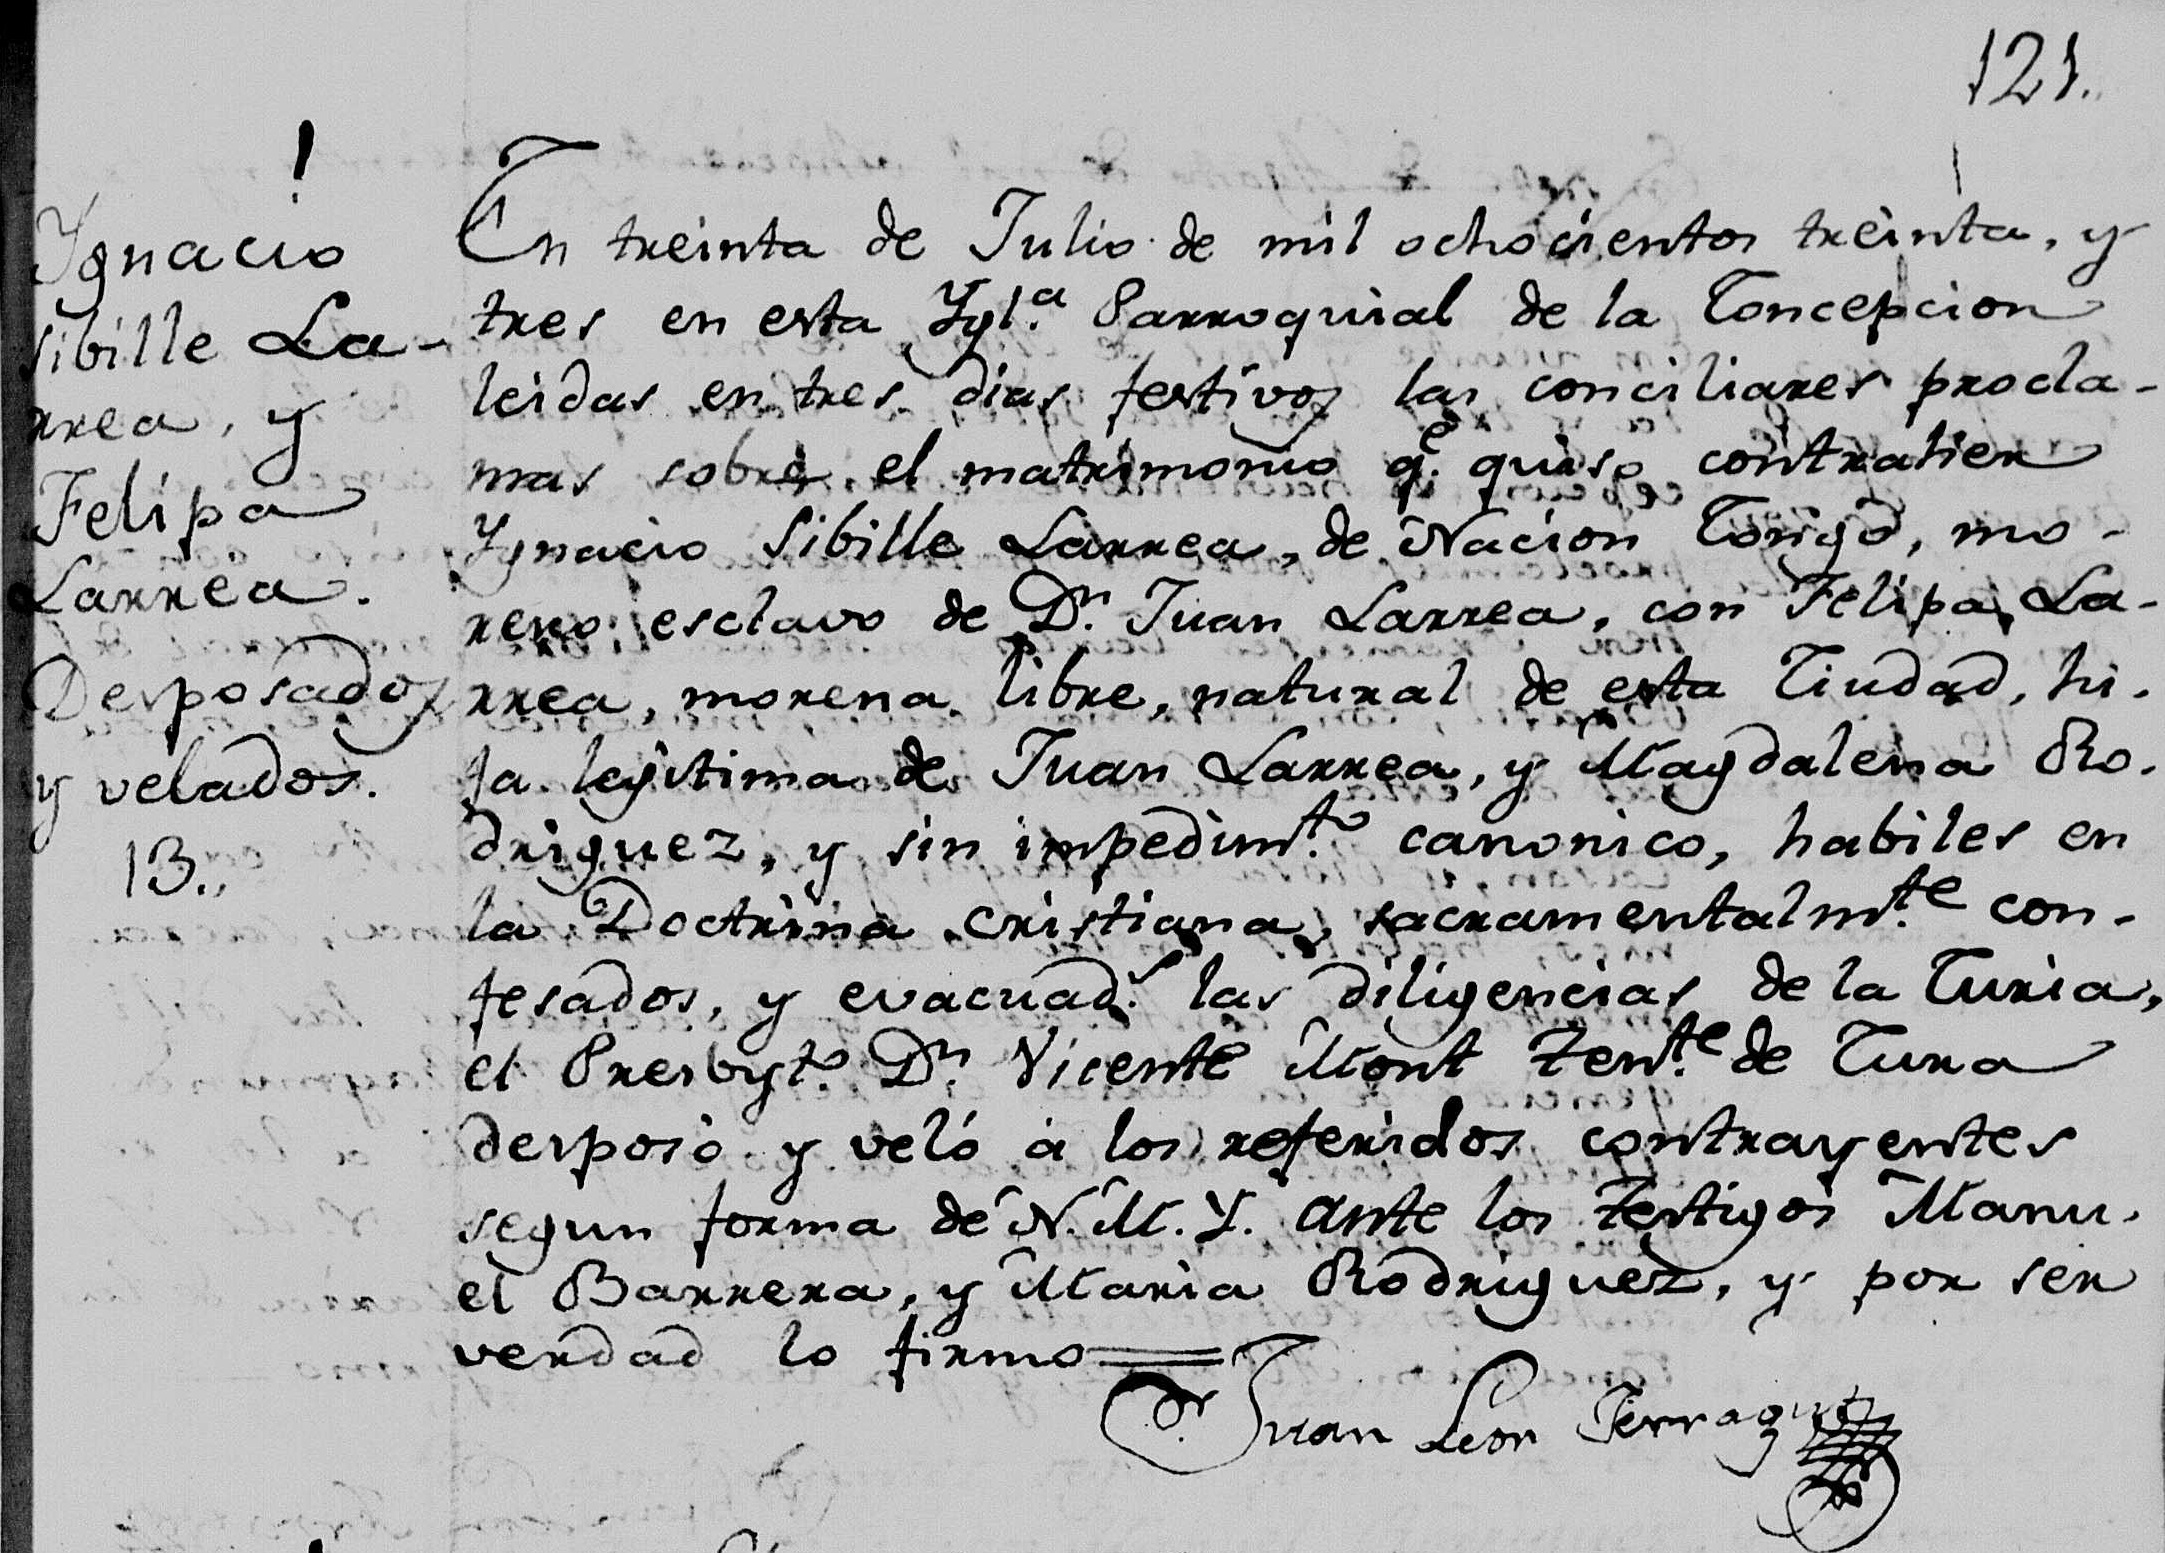 Acta de casamiento de Felipa con Ignacio Sibille Larrea, quien fue cocinero del general Juan Lavalle. Gentileza Ariel Ortiz.